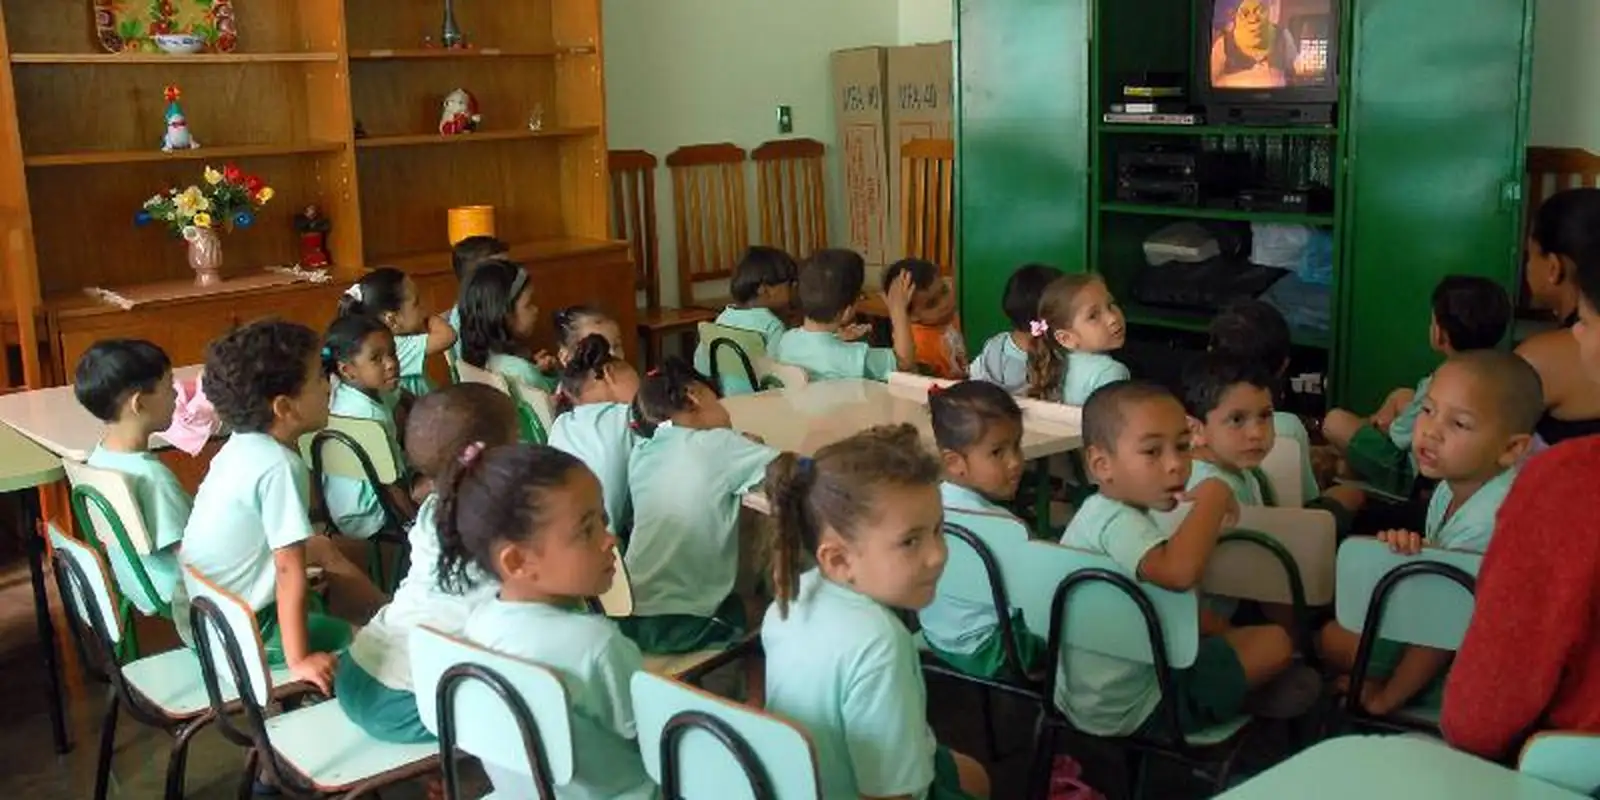 Educação Infantil: conteúdo de 90% das turmas ignora temas raciais